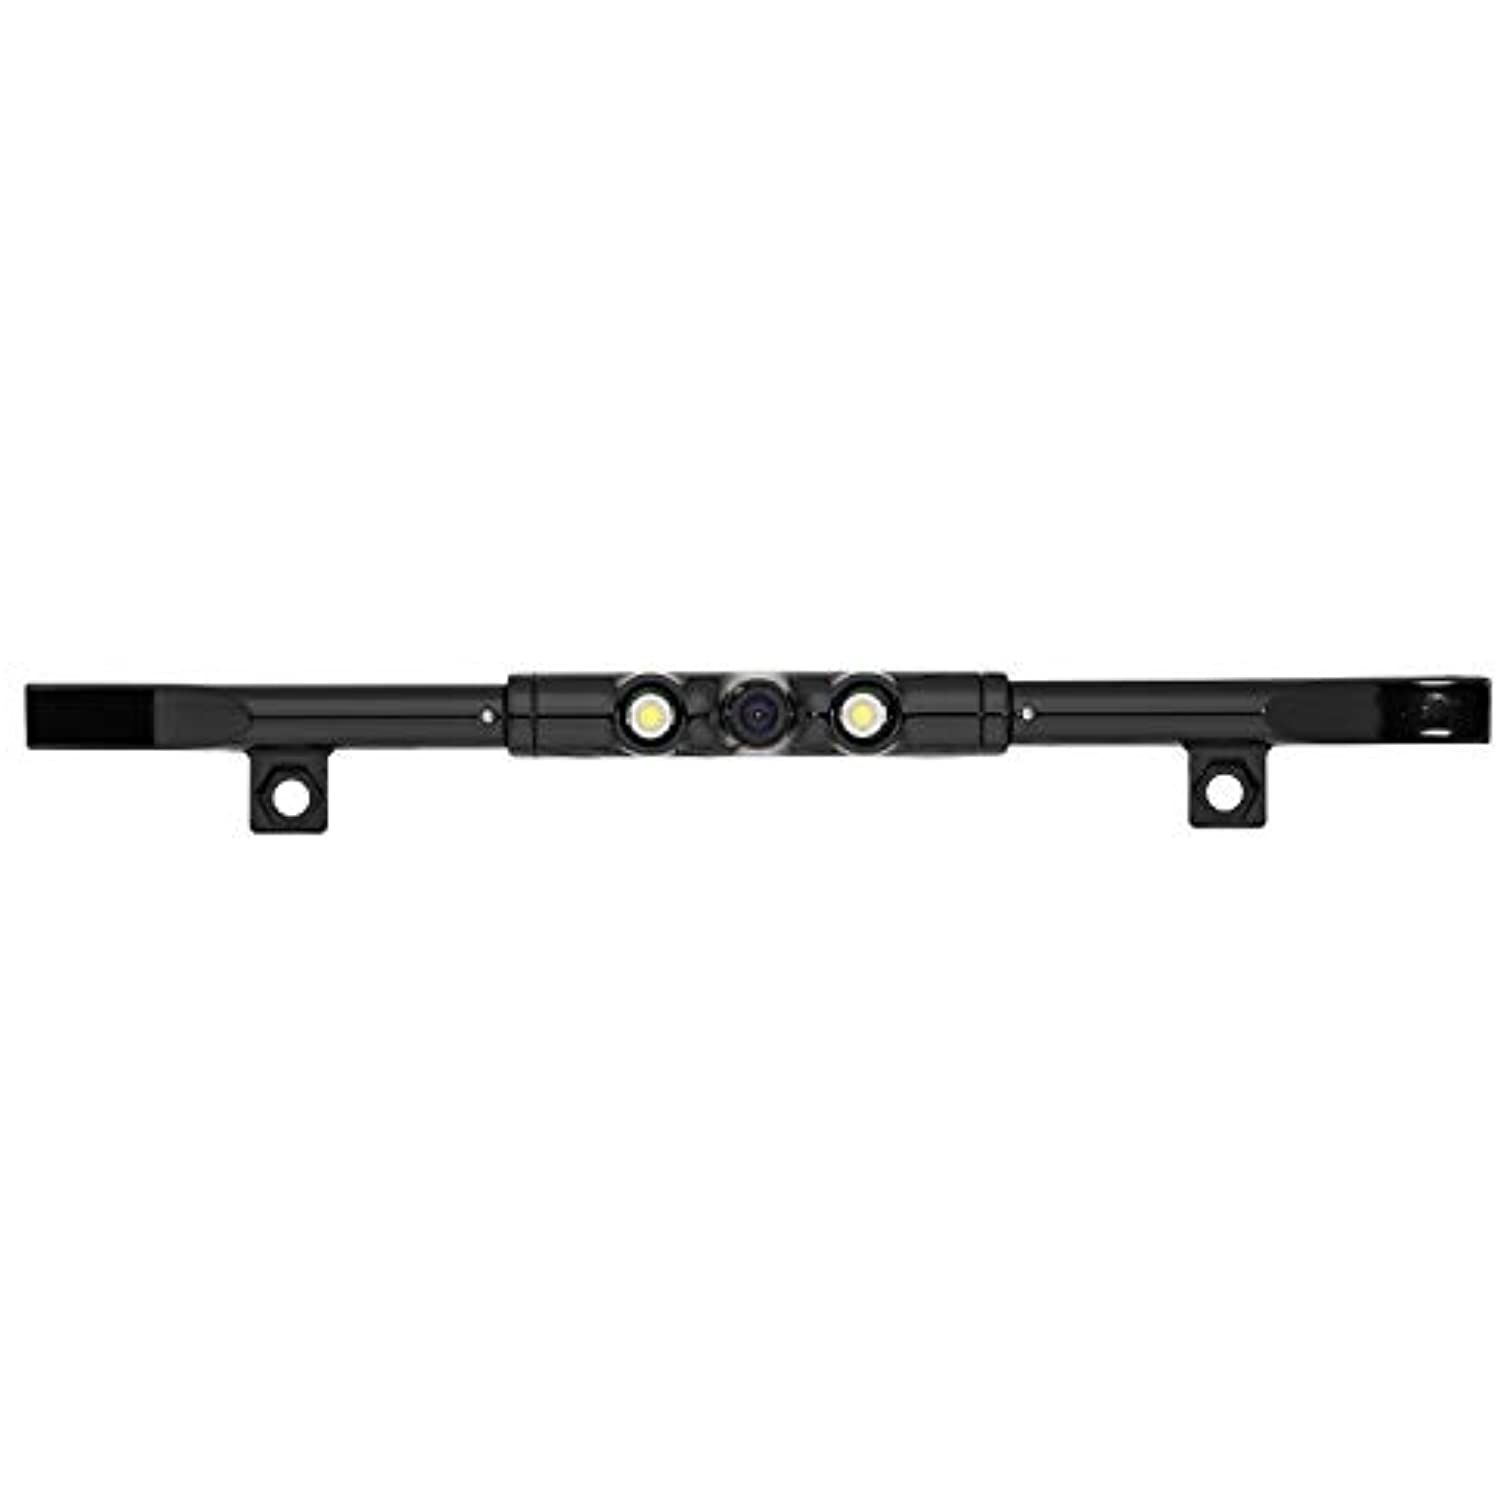 BOYO VTL425LTJ - Ultra Slim Bar-Type License Plate Backup Camera with Active Parking Lines and LED Lights (Black)